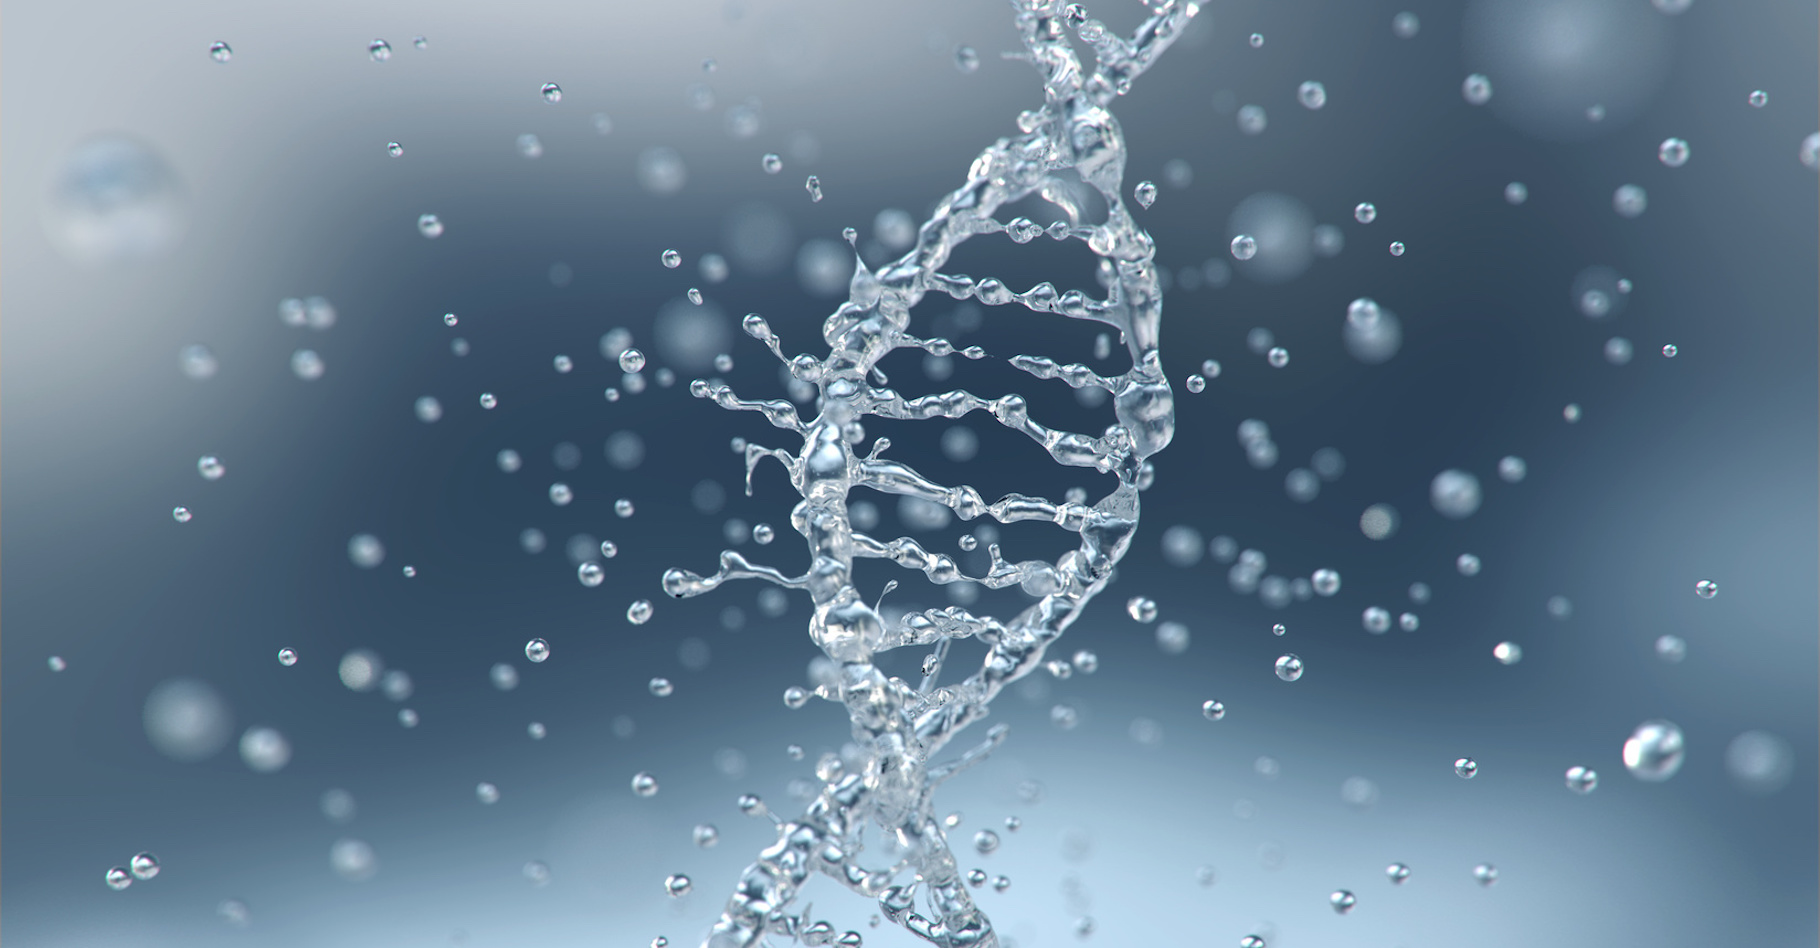 Pour la première fois, des chercheurs de l’université Chalmers (Suède) ont étudié comment l’ADN se comporte dans un environnement hydrophobe. Ils ont observé qu’alors, la forme en spirale caractéristique de l’ADN commence à se défaire. © Anusorn, Fotolia